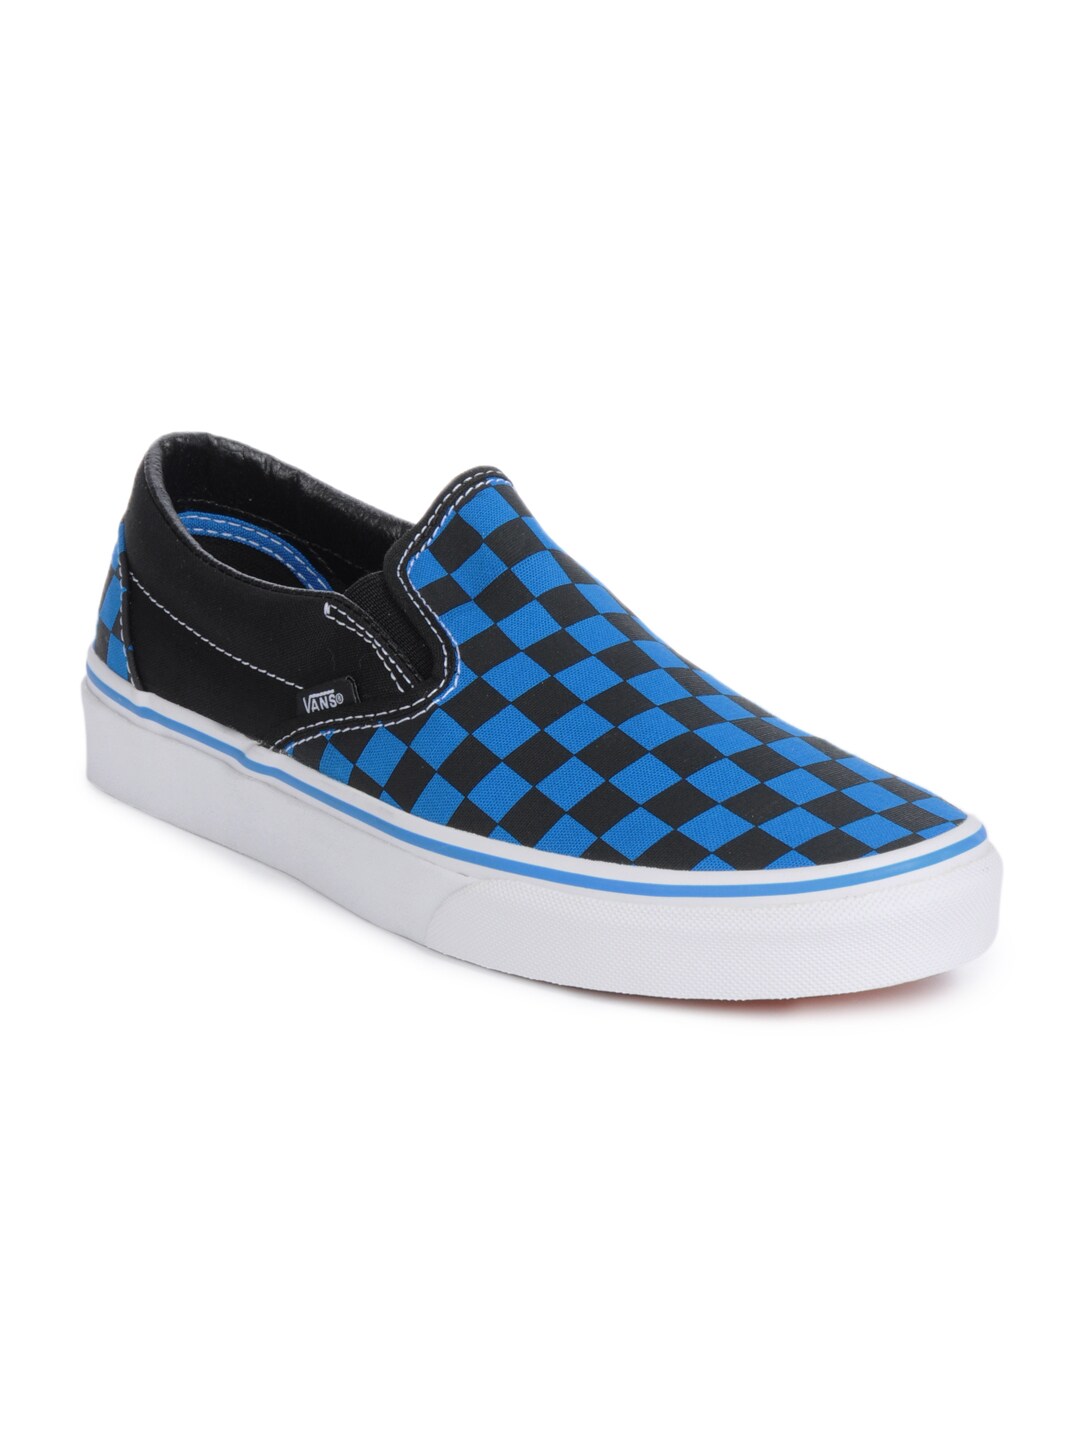 Vans Men Classic Slip-On Black & Blue Shoes